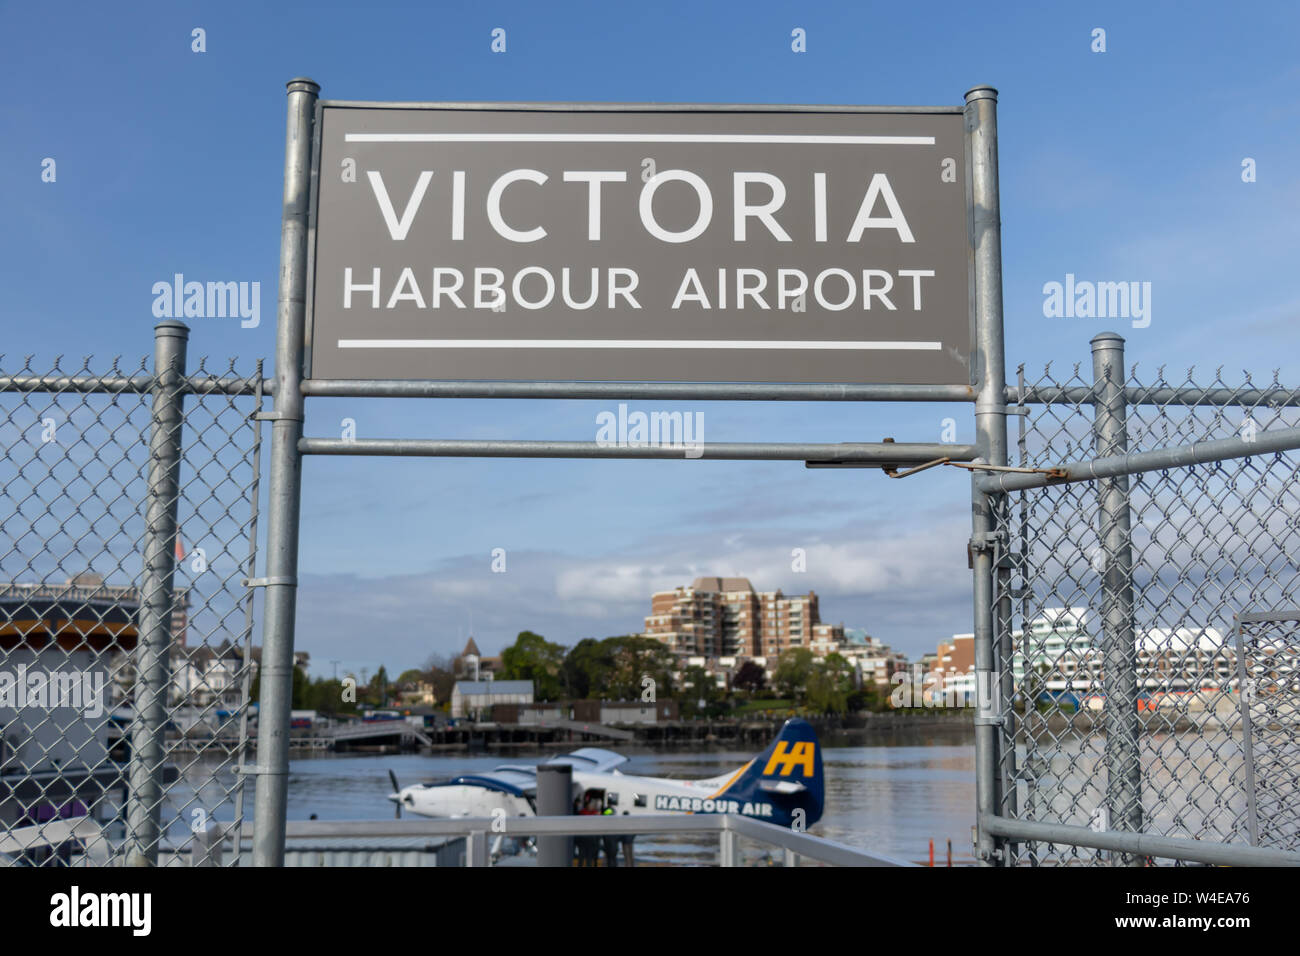 Panneau de l'aéroport Victoria Harbour au-dessus de l'entrée du terminal avec un hydravion Harbour Air vu amarré en dessous. Banque D'Images